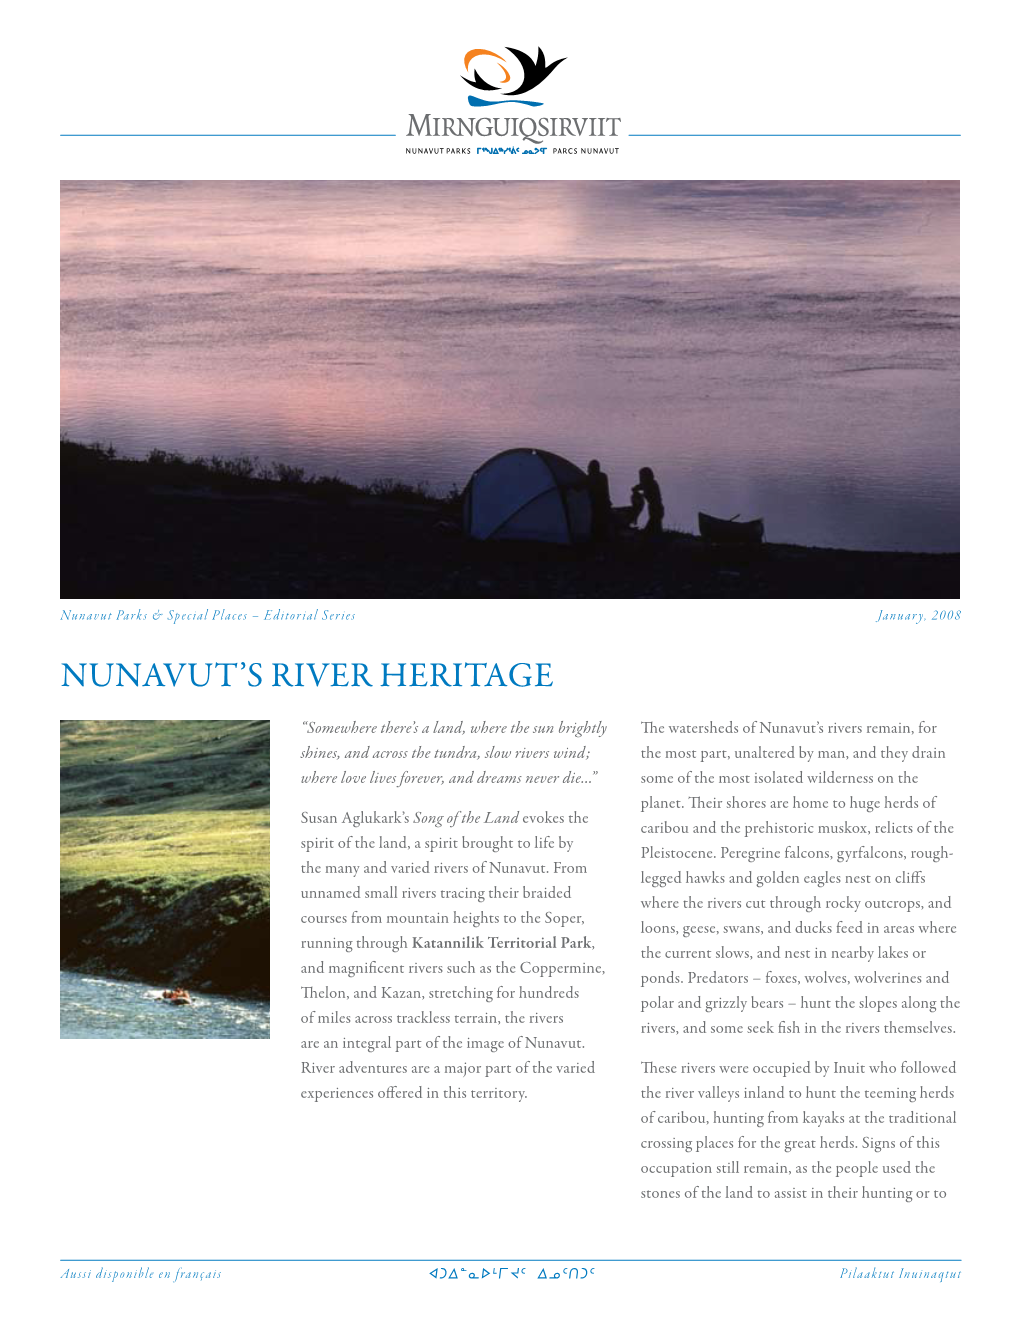 Nunavut's River Heritage